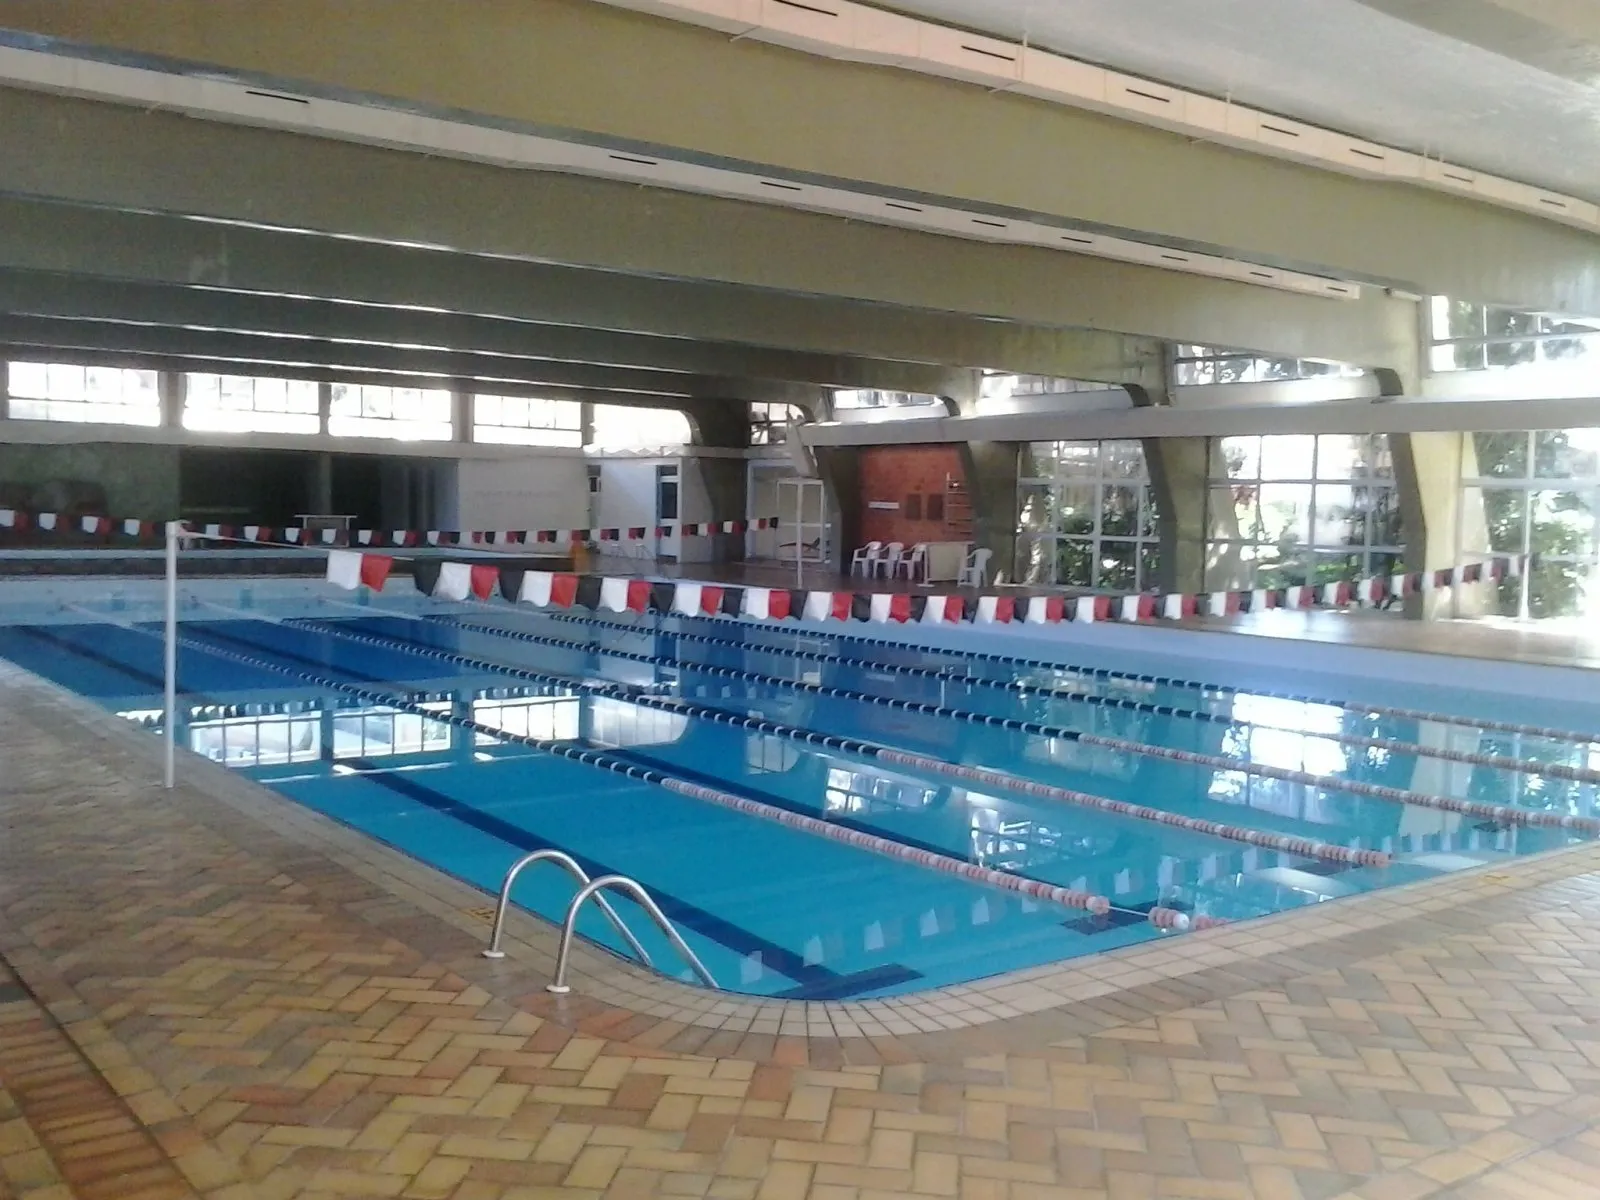 Reforma da piscina trmica foi concluda. Local reabre para o uso dos associados nesta quarta-feira (24/04)